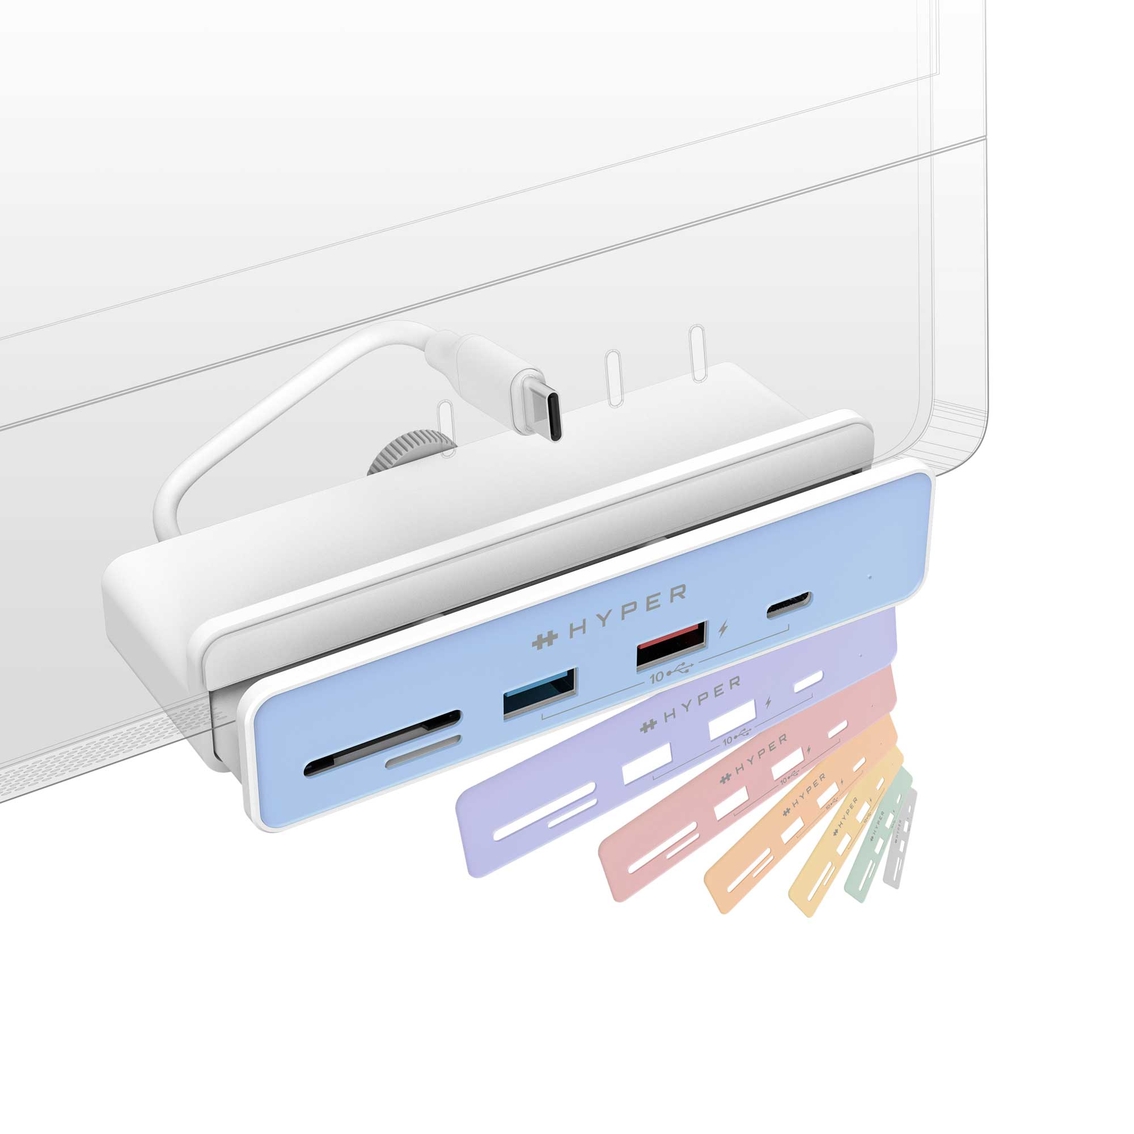 Targus HyperDrive 6-in-1 USB-C Hub for Apple iMac 24 in. - Image 4 of 7